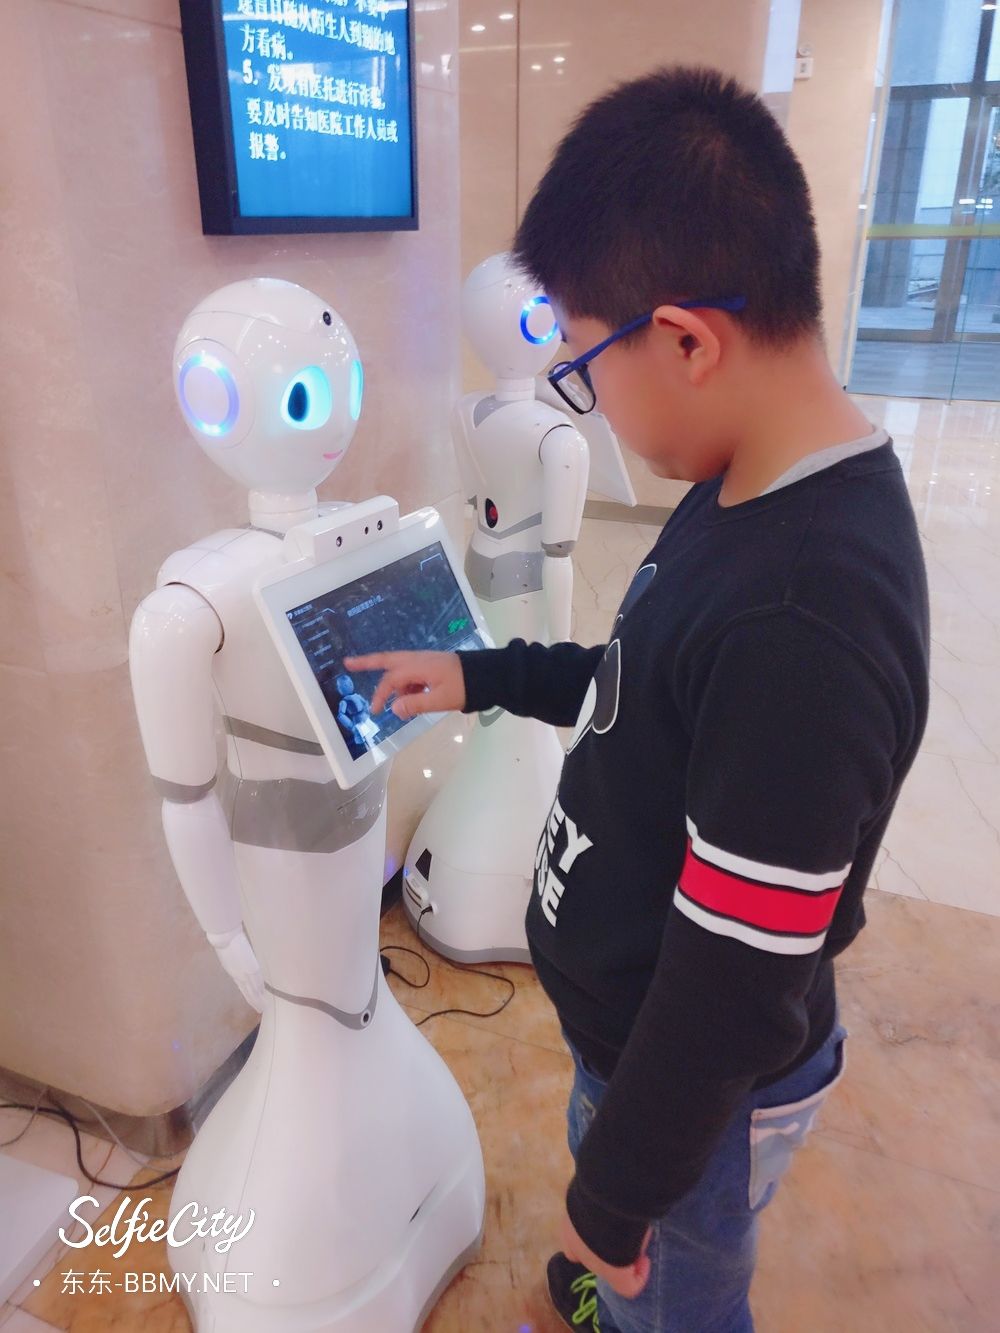 金东浩生病去医院发现机器人照片